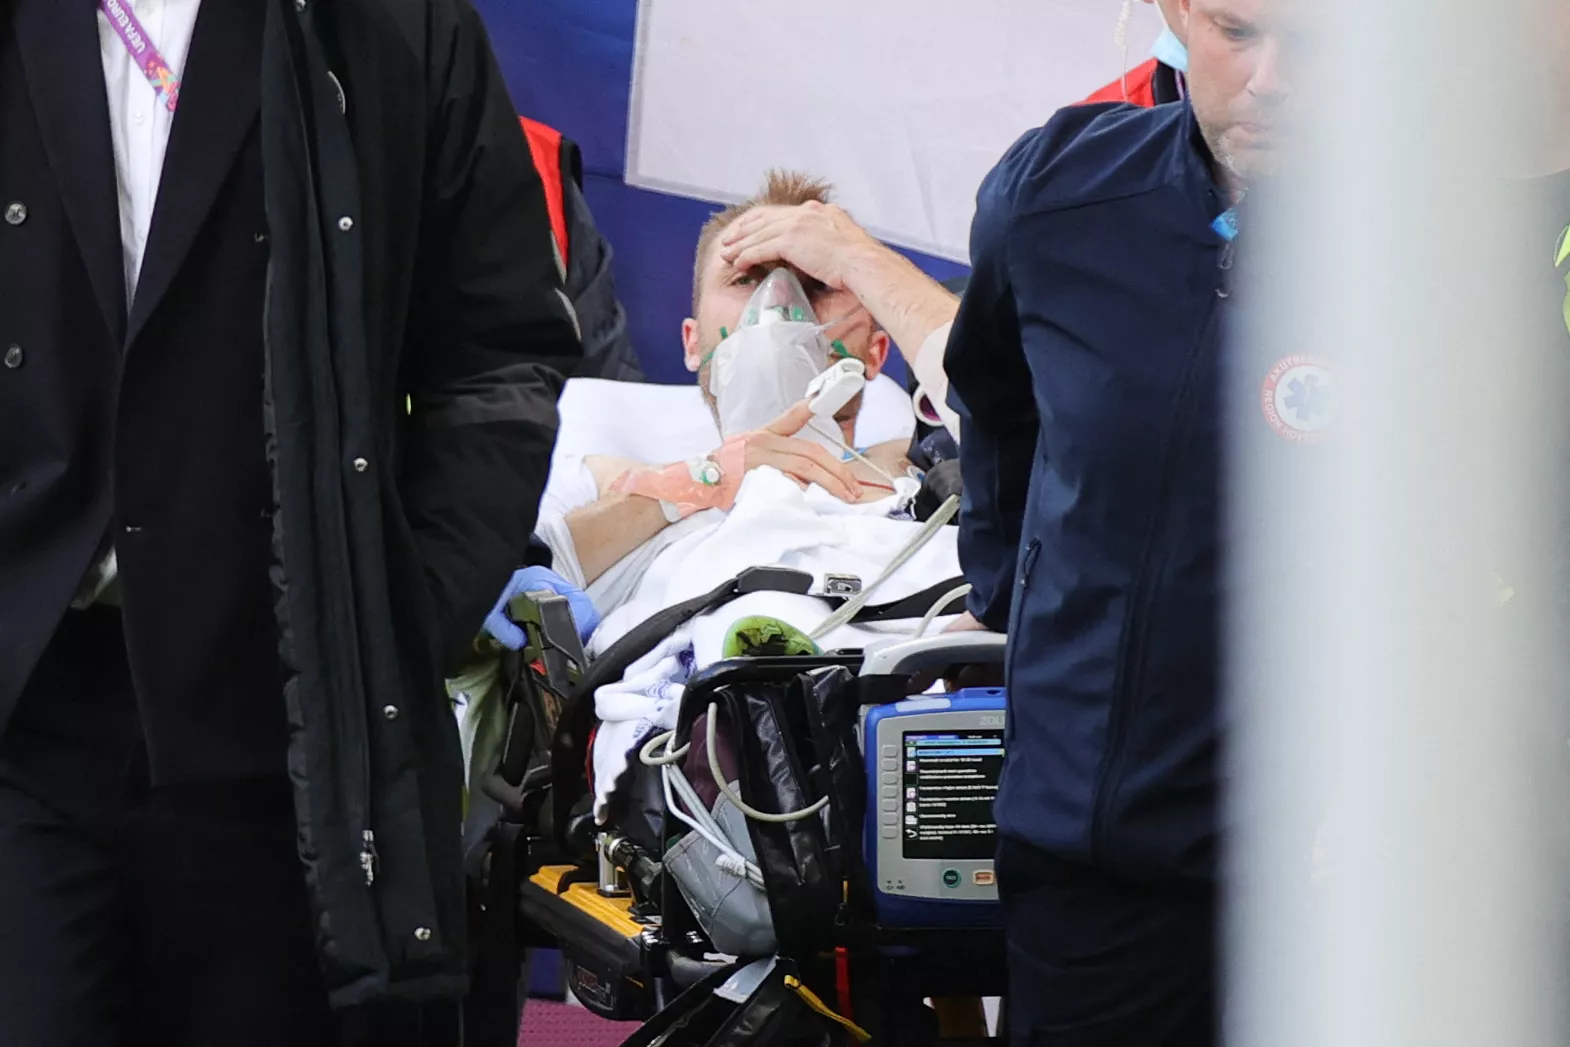 Кристиан Эриксен потерял сознание во время матча. Его реанимировали прямо на поле. Уносили с поля футболиста в сознании